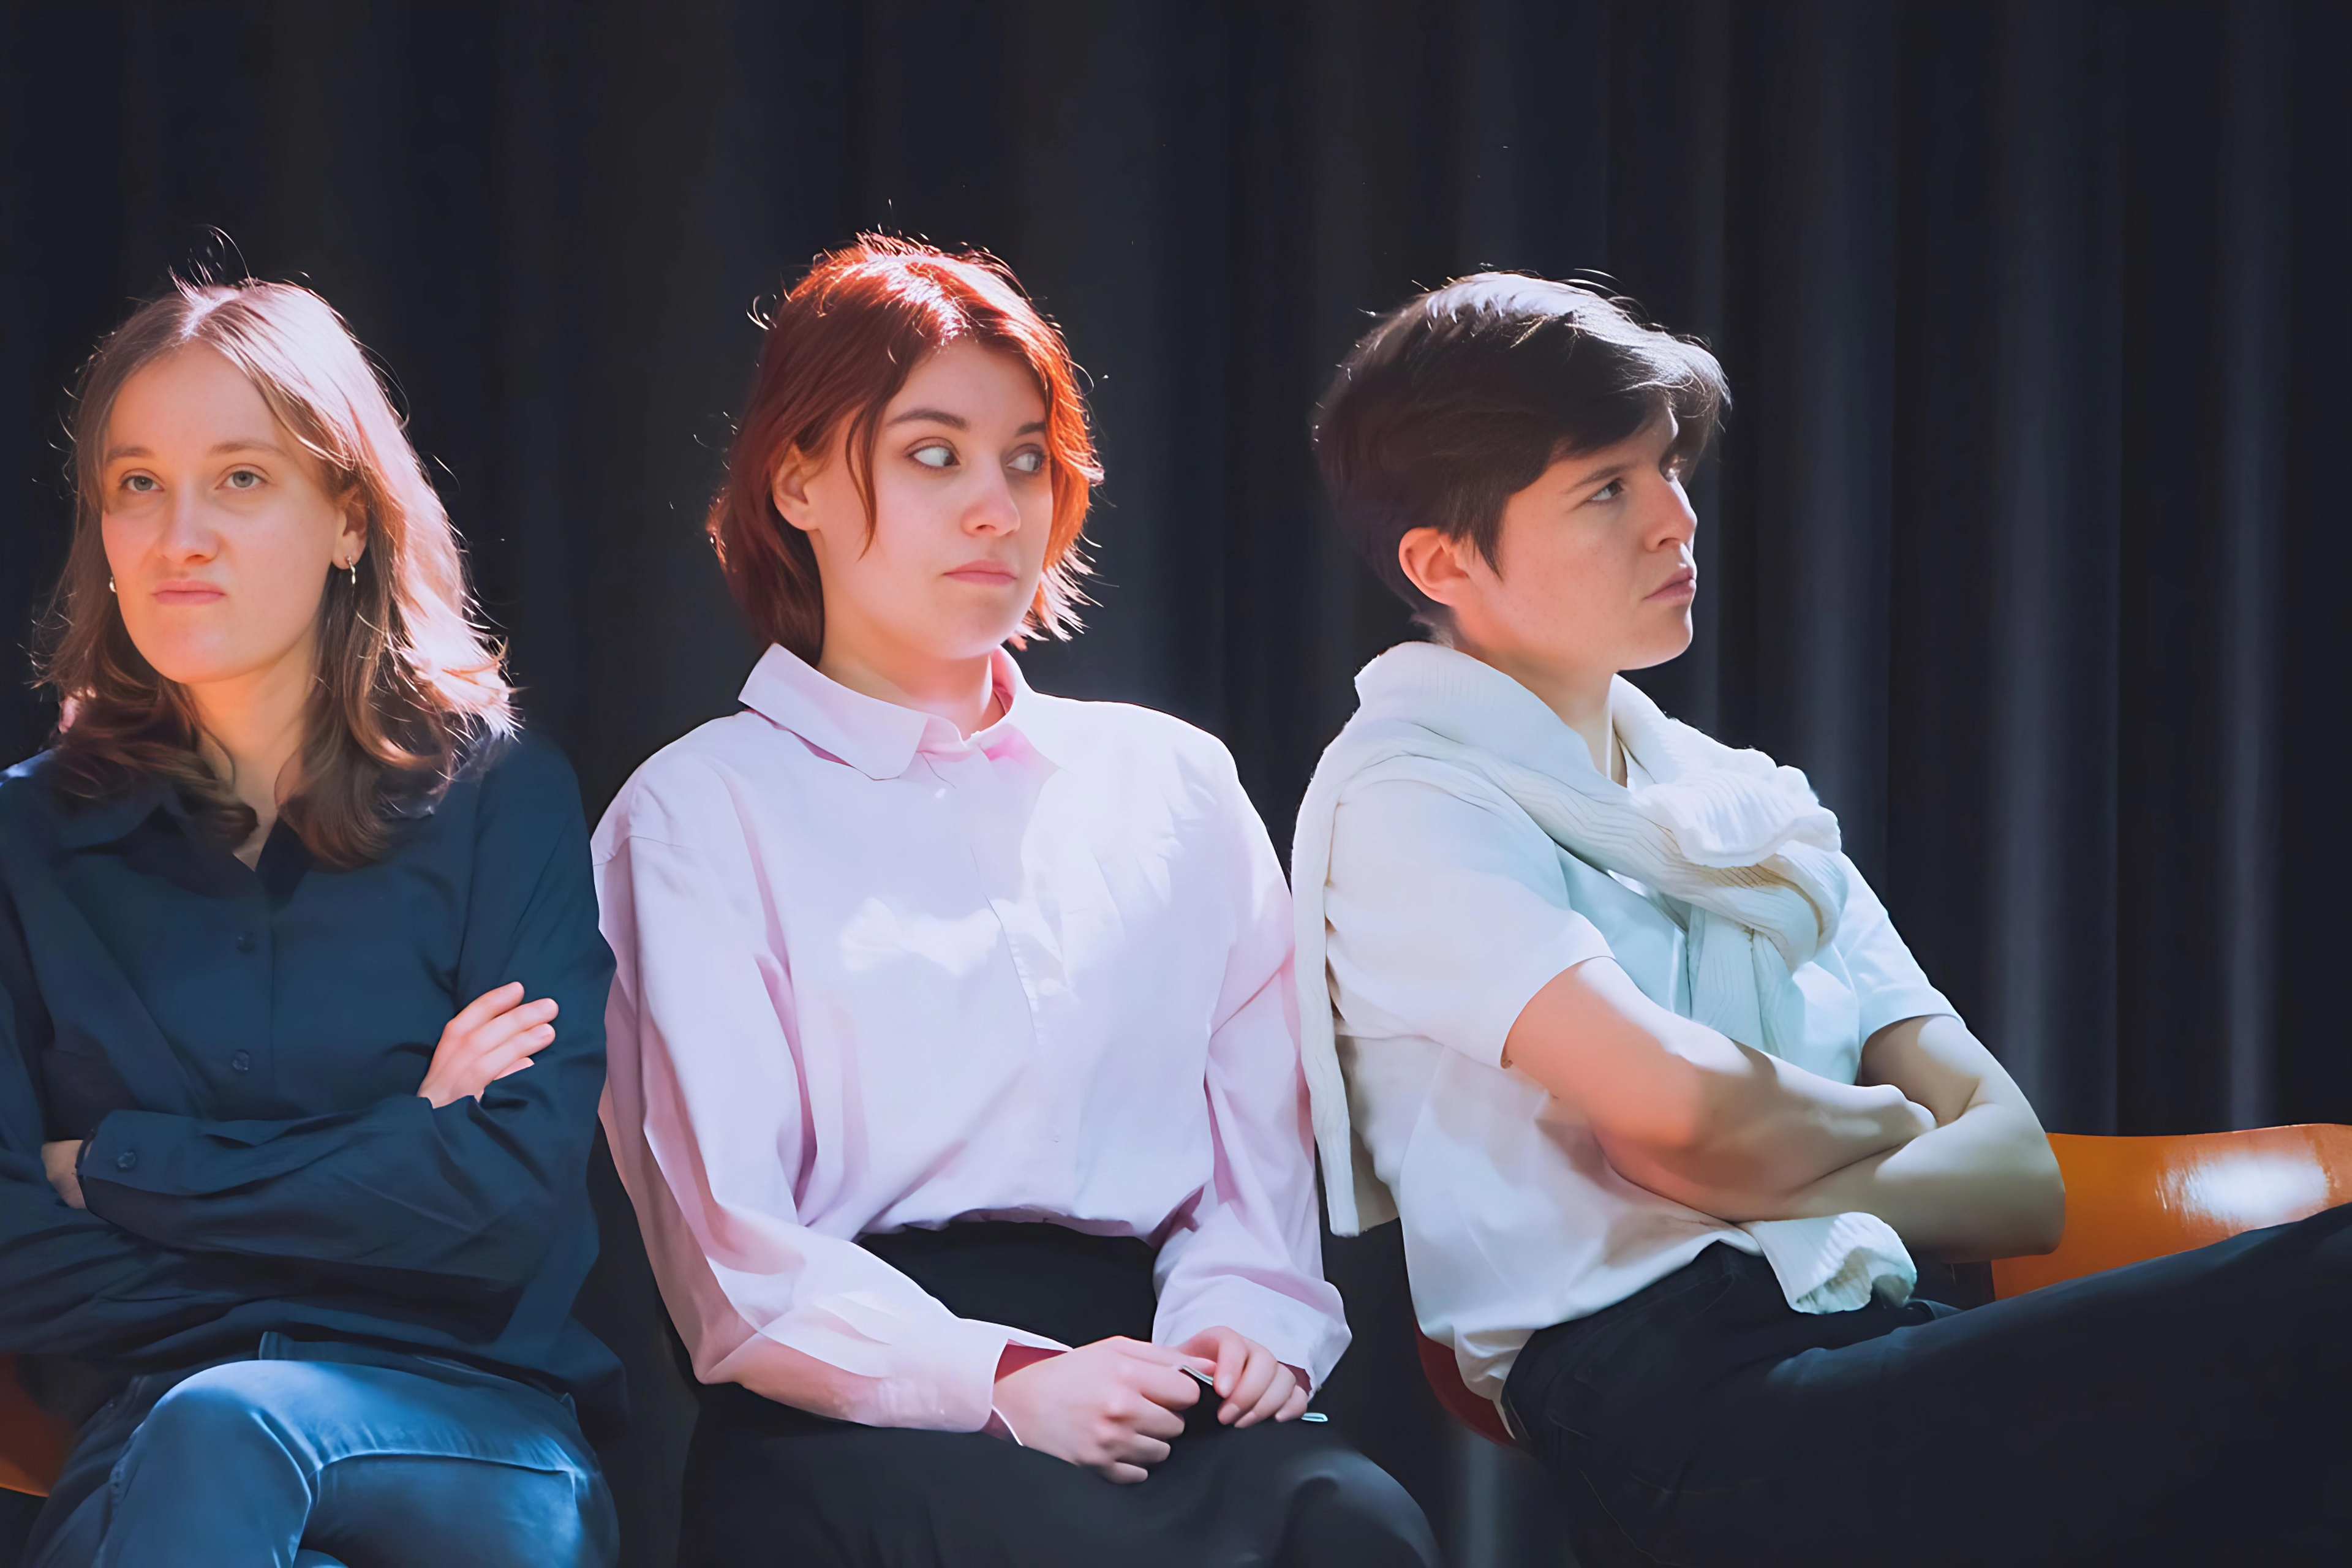 Die drei Hauptdarstellerinnen des Theaterstückes "Kunst" während der Probe. Sie sitzen gemeinsam auf der Bühne vor einem schwarzen Vorhang.